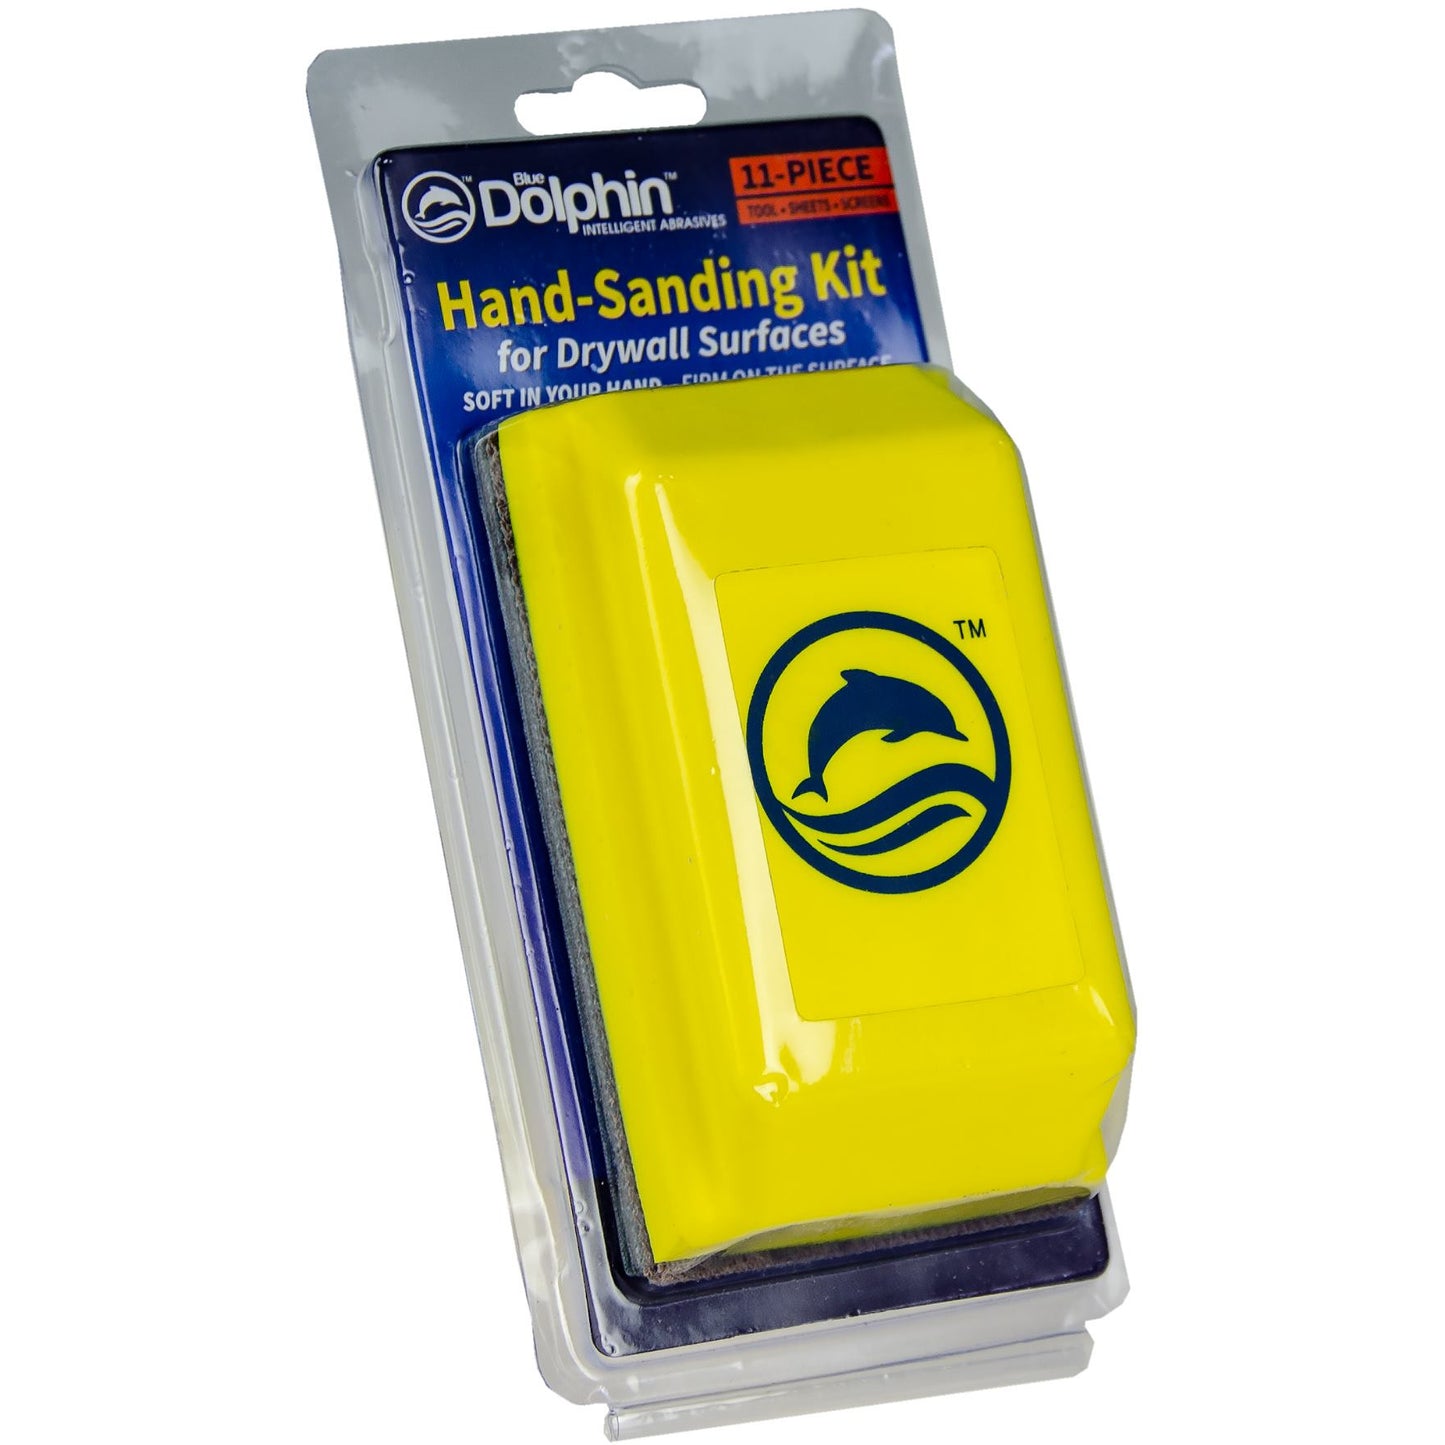 BlueDolphin Hand-Sanding Kit